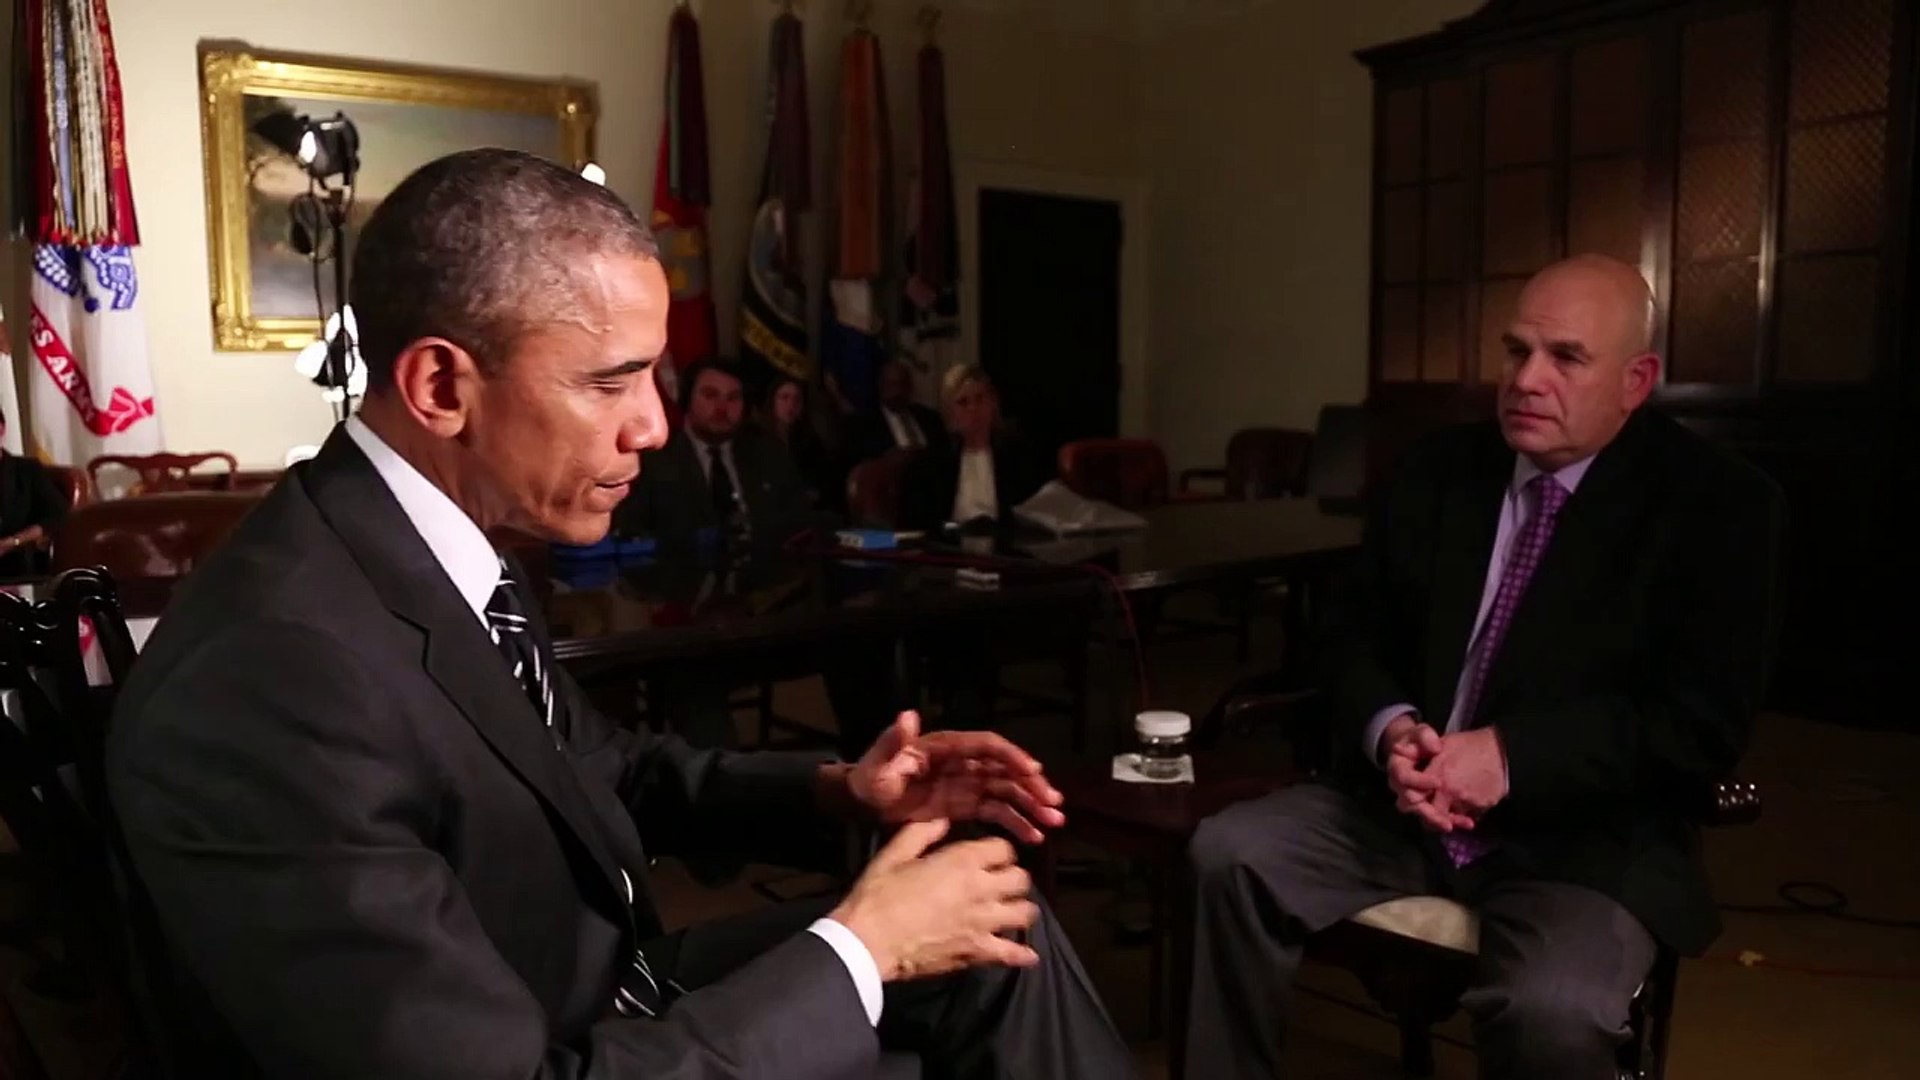 L'interview de David Simon, créateur de la série The Wire, par Barack Obama  - Vidéo Dailymotion